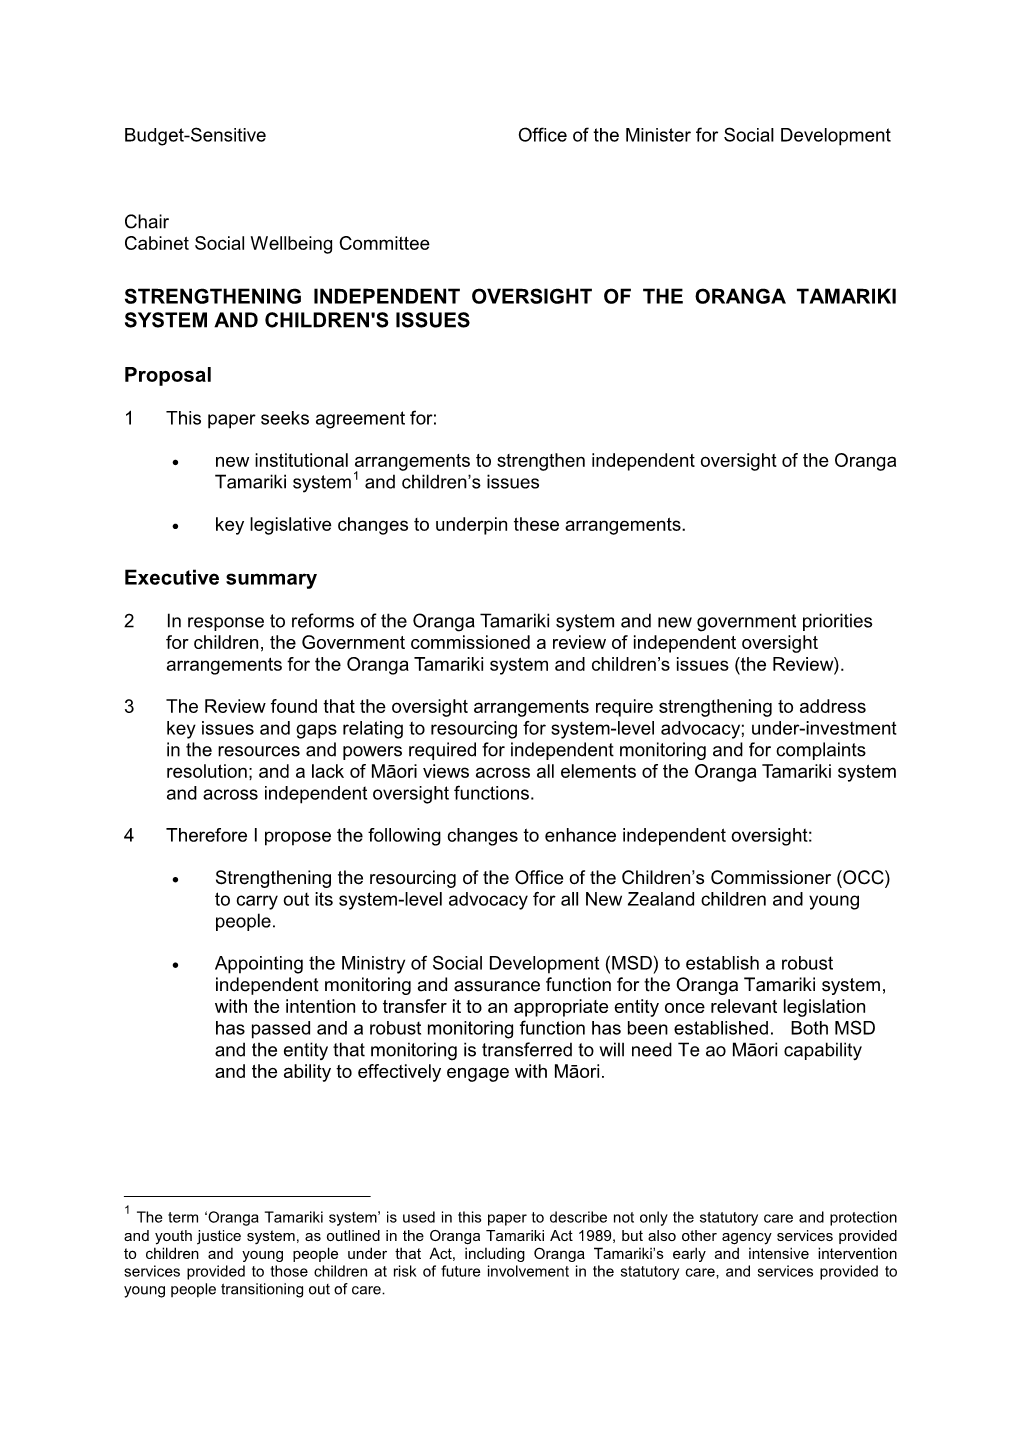 Strengthening Independent Oversight of Oranga Tamariki and Children's